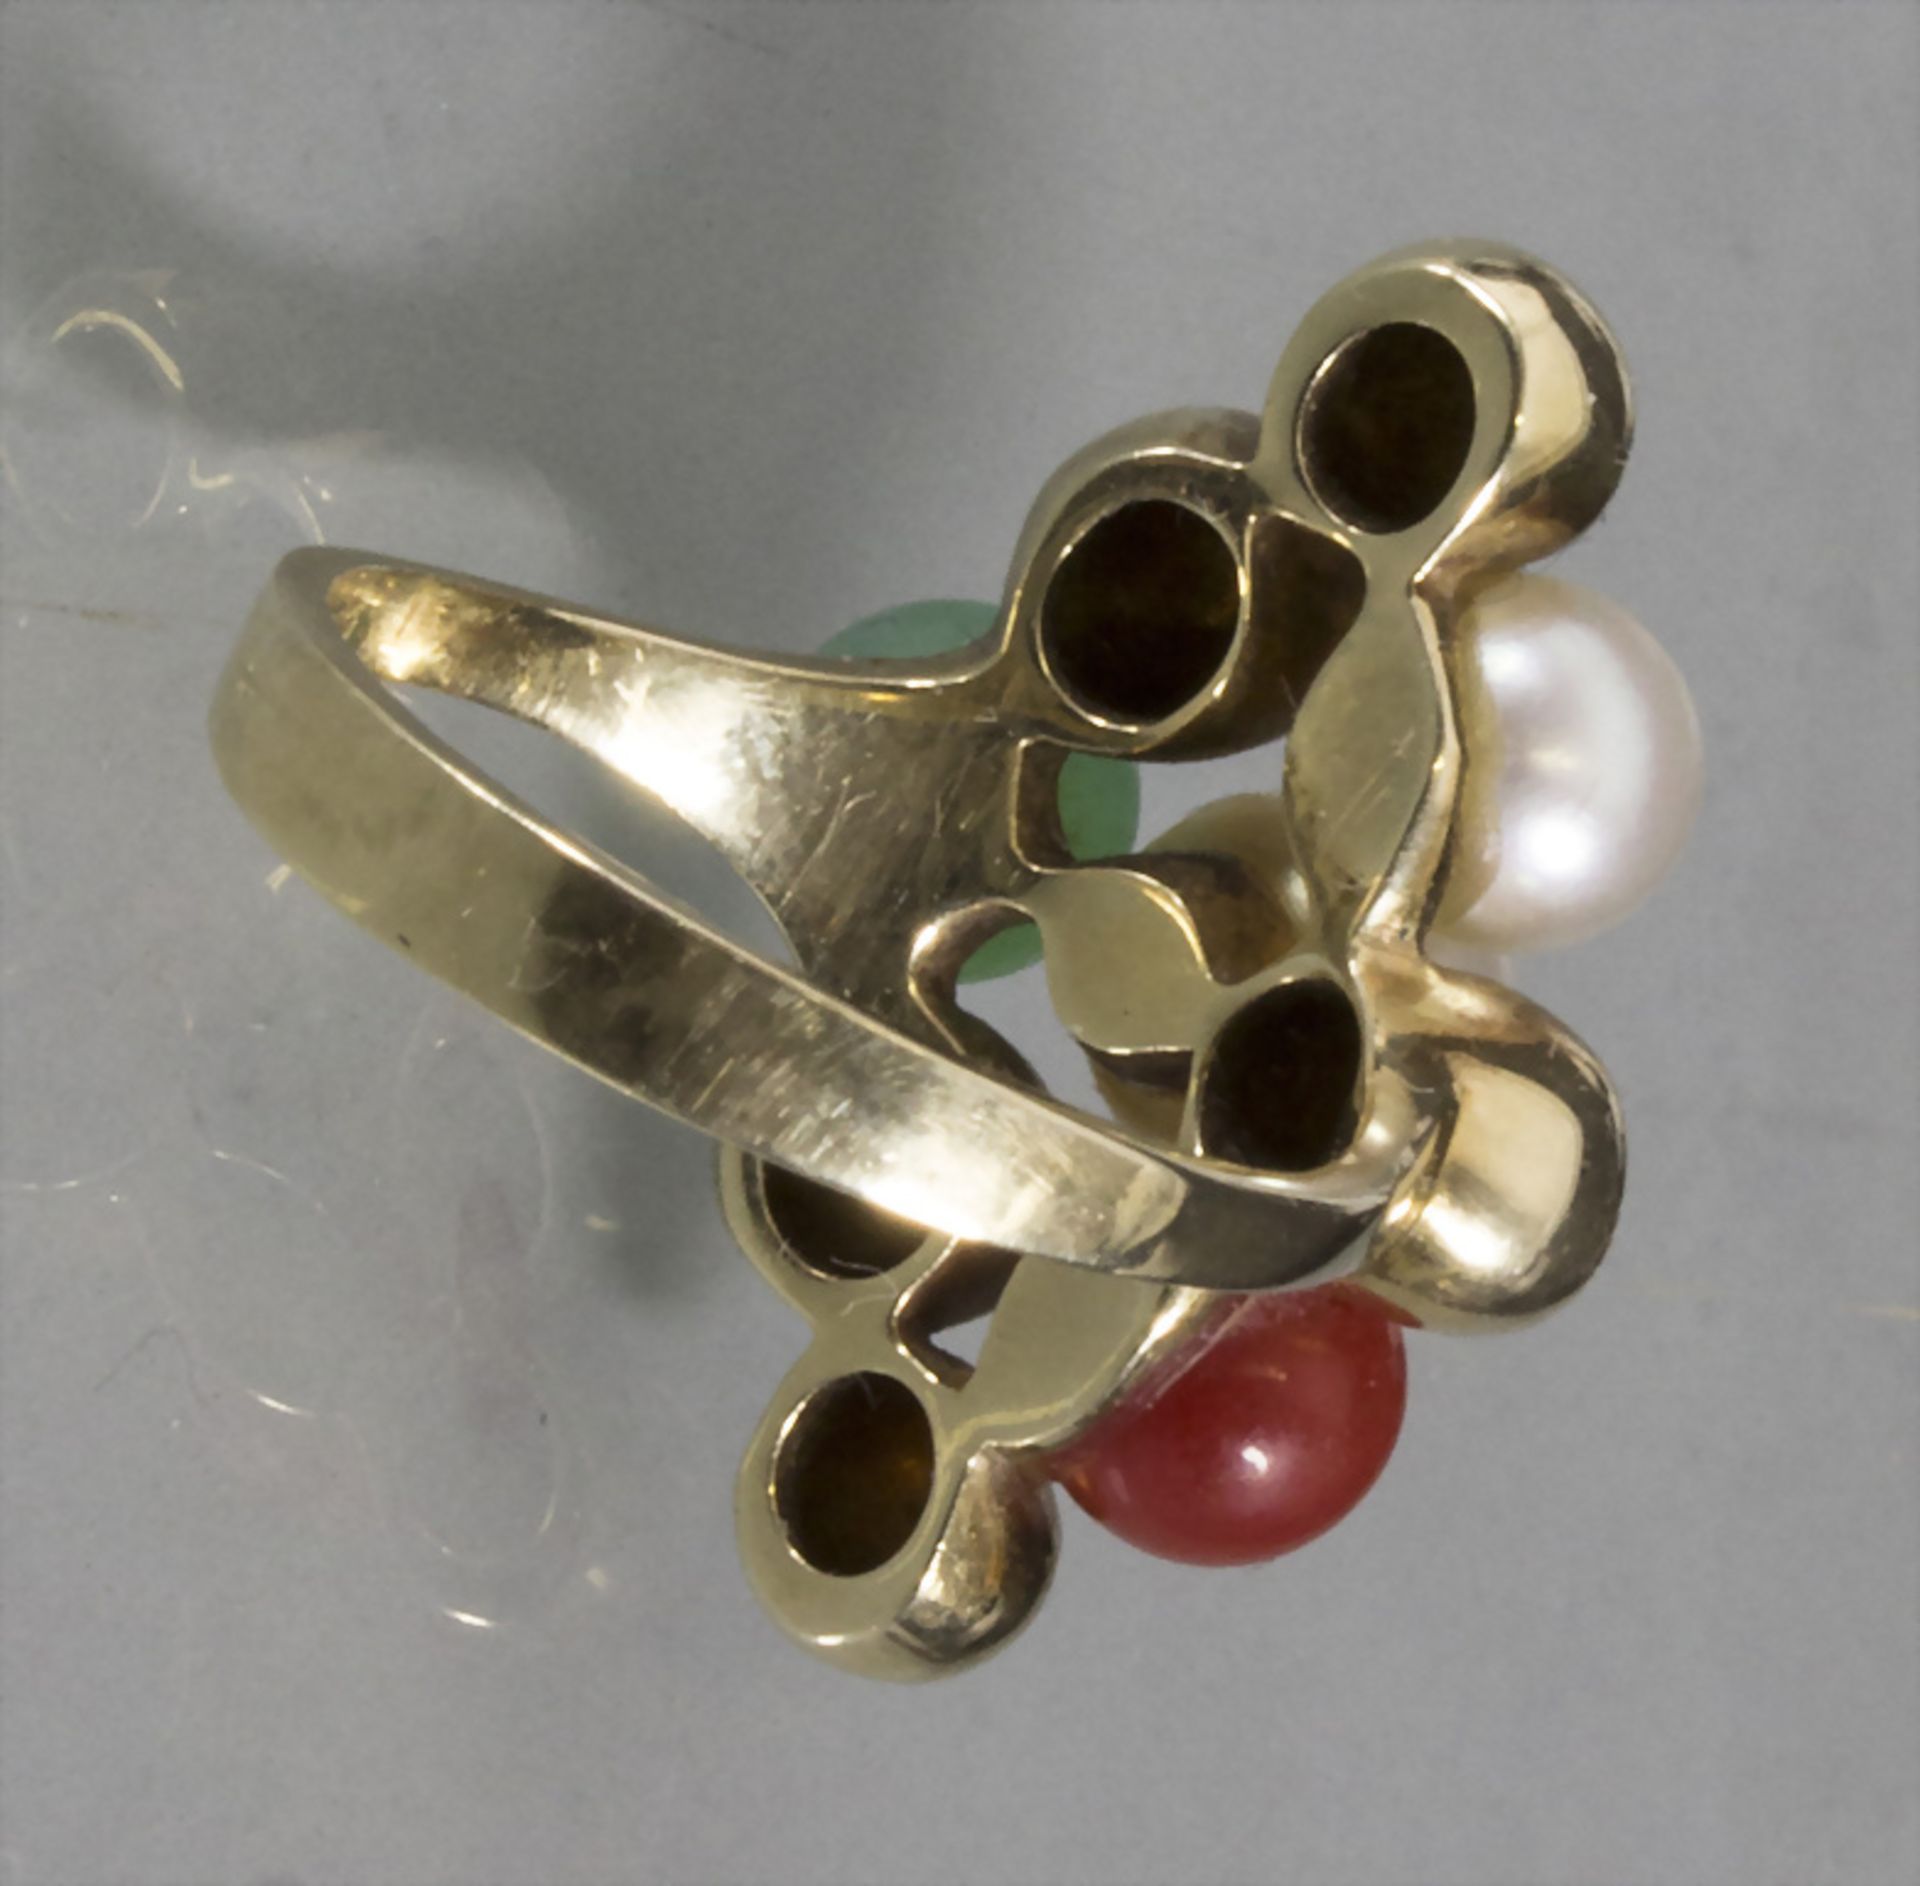 Damenring / A ladies 14 ct gold ring, um 1970 - Image 2 of 2